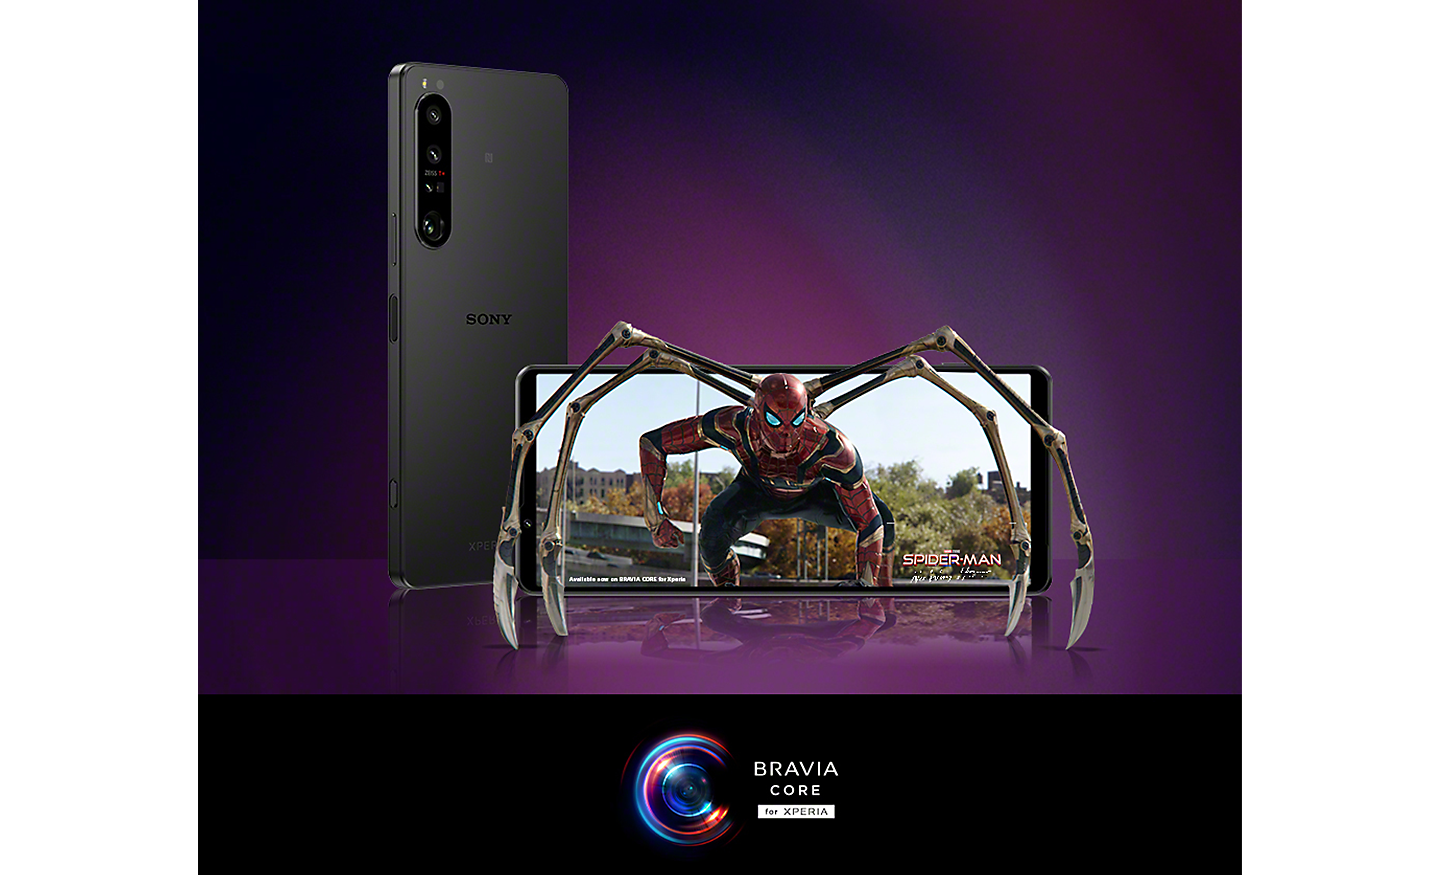 Deux smartphones Xperia dont l'un affiche une scène de Spider-Man: No Way Home, et logo de BRAVIA CORE for Xperia